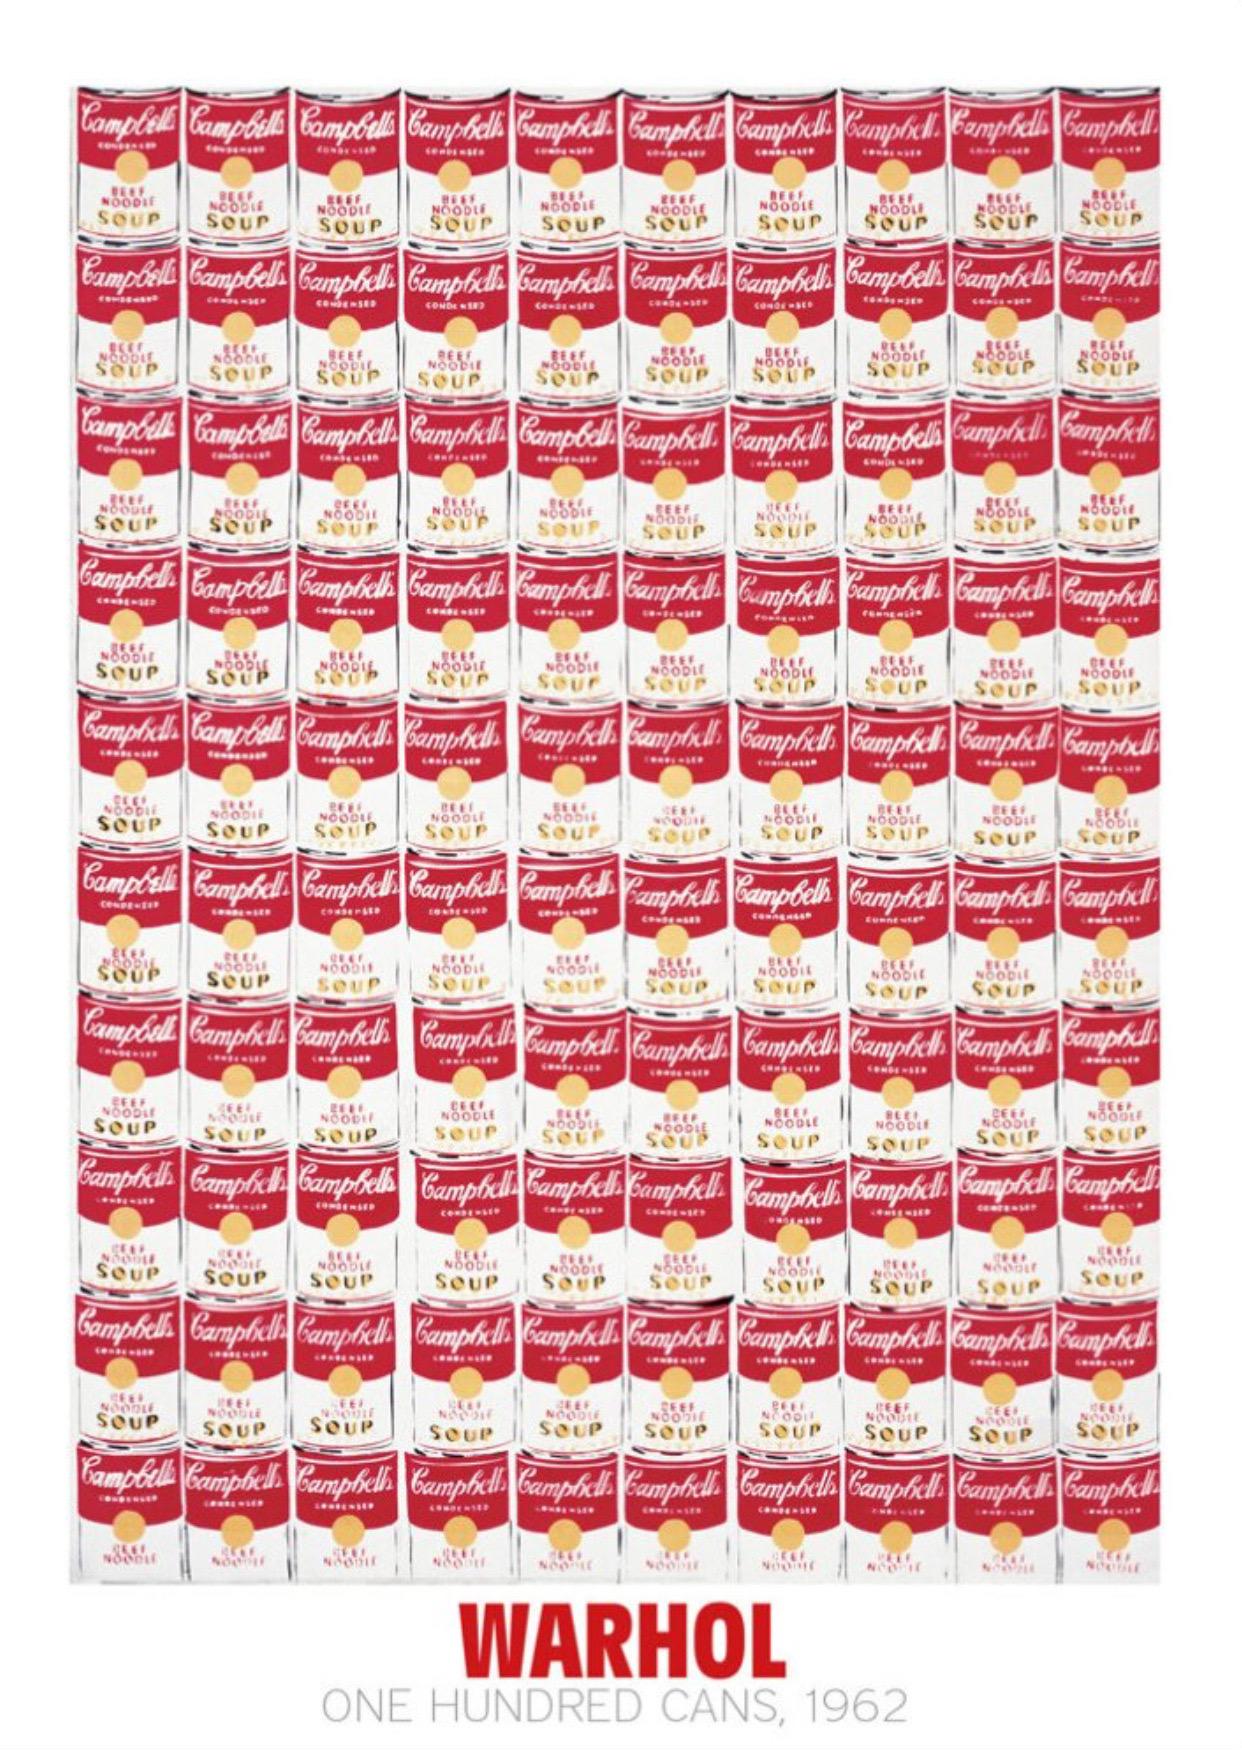 Andy Warhol, Ein Hundred Cans, 1962

Mattes 250 g/m² konserviertes Digitalpapier

Größe 65 x 90 cm (25,59 x 35,43) 

Dieser Druck wird mit einem Rand versehen, der den Namen des Künstlers, den Titel des Drucks und die Verlagsangaben am unteren Rand